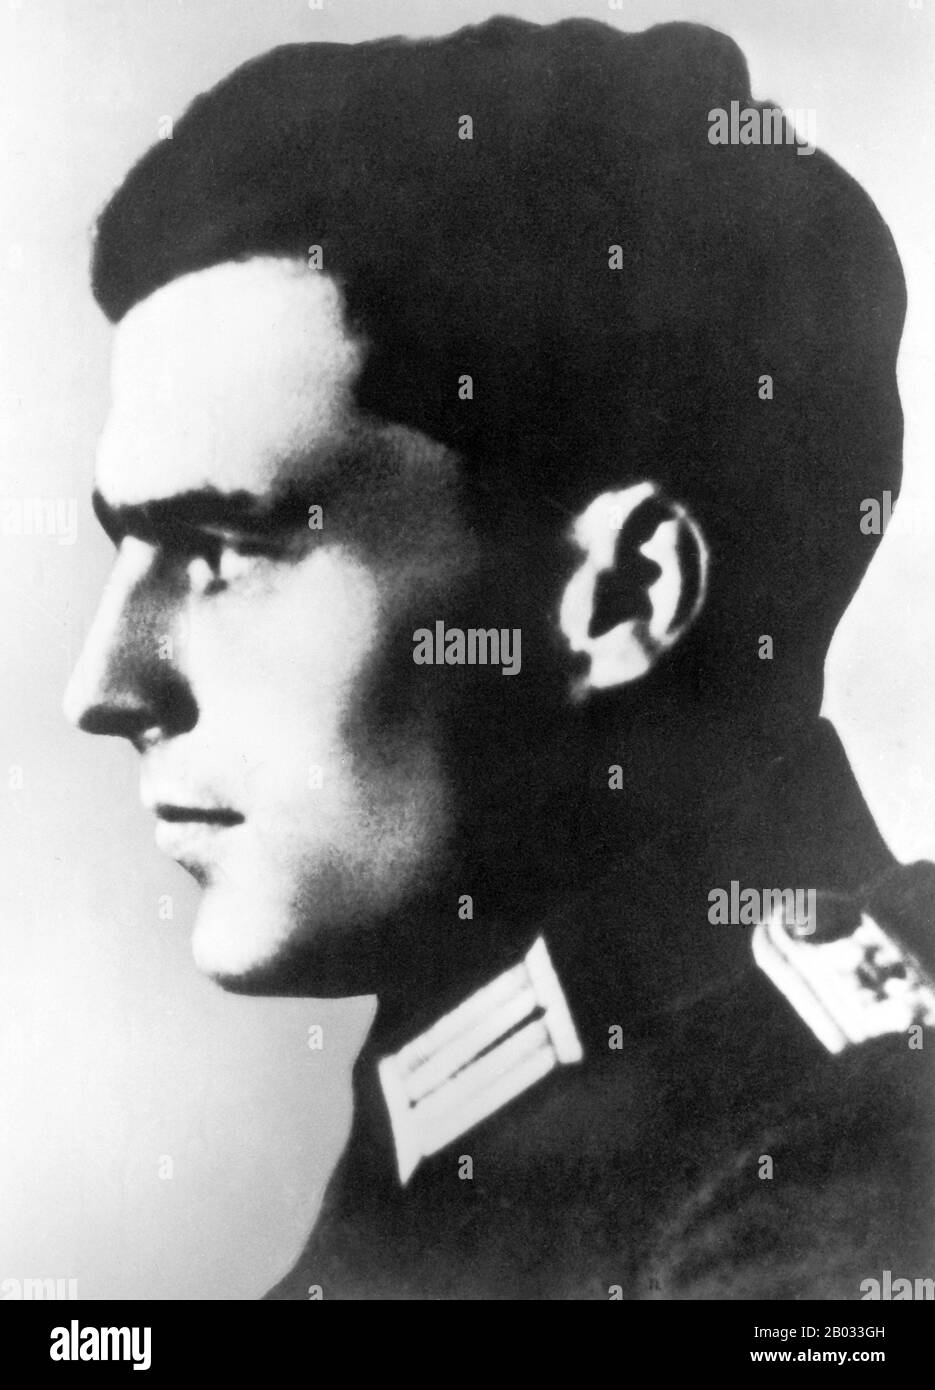 Claus Philipp Maria Schenk Graf von Stauffenberg, comúnmente conocido como Claus Schenk Graf von Stauffenberg (15 de noviembre de 1907 – 21 de julio de 1944), Era un oficial del ejército alemán y miembro de la nobleza alemana tradicional que era uno de los miembros principales del complot fallido del 20 de julio de 1944 para asesinar a Adolf Hitler y sacar al Partido Nazi del poder. Junto con Henning von Tresckow y Hans Oster, fue una de las figuras centrales del movimiento de Resistencia alemán dentro de la Wehrmacht. Por su participación en el movimiento fue ejecutado por un escuadrón de fusilamiento poco después del fallido intento conocido como Foto de stock